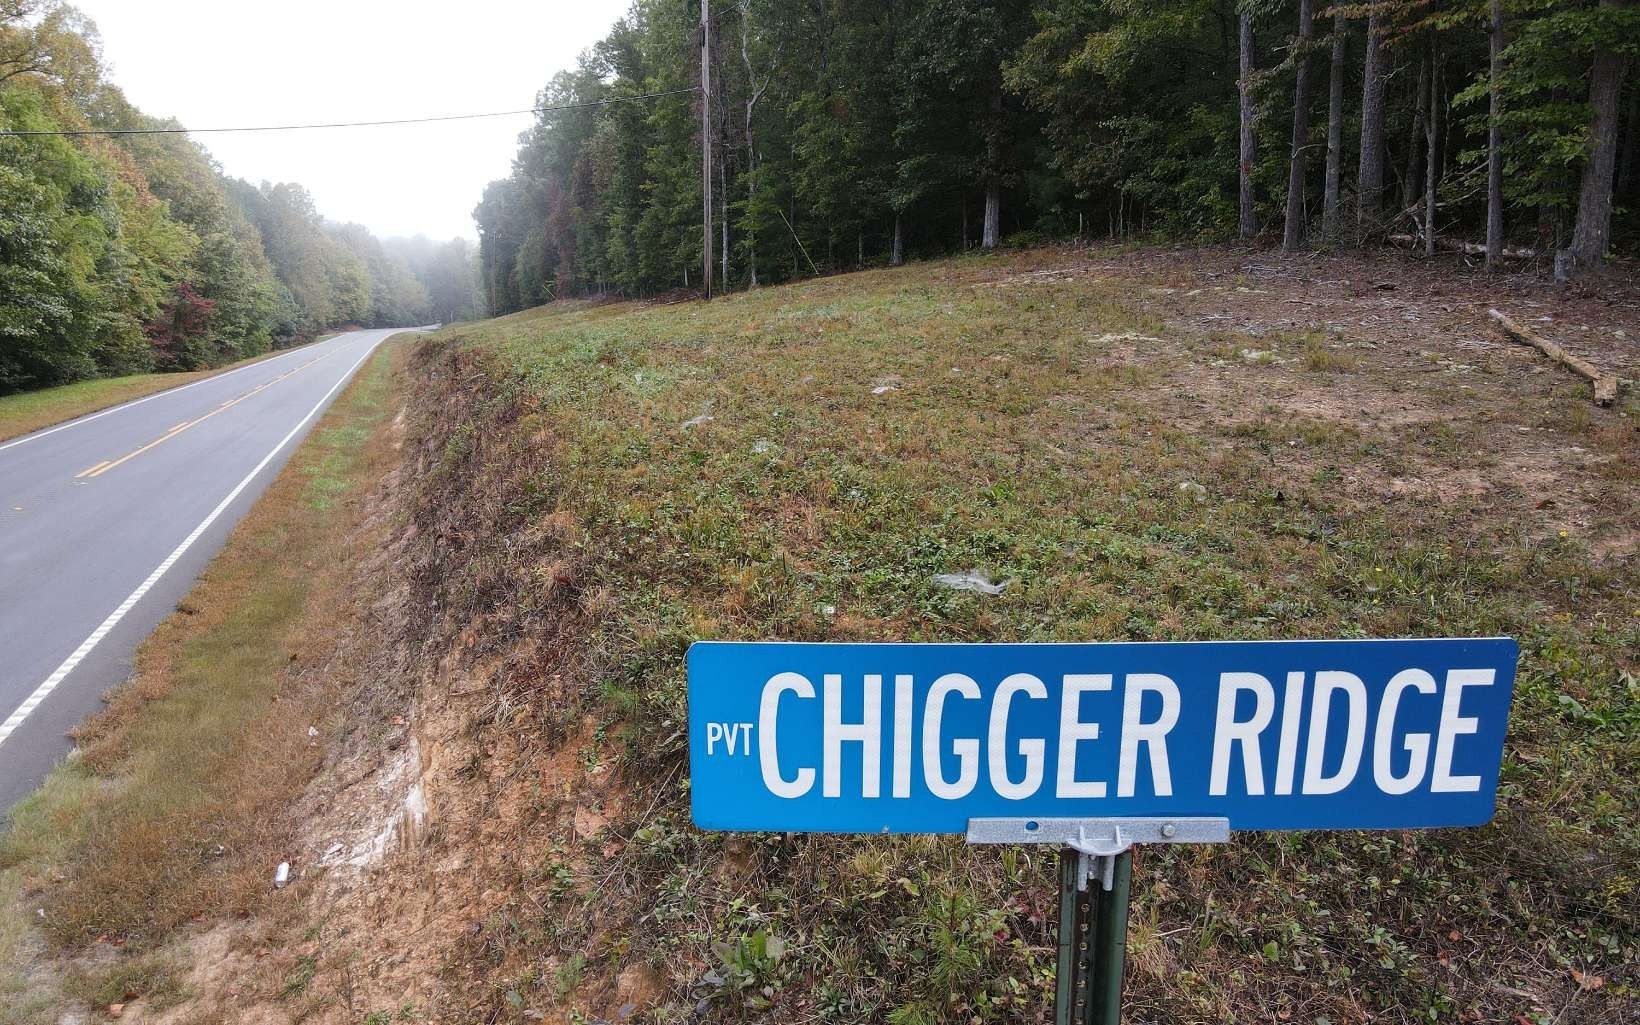 1. Chigger Ridge